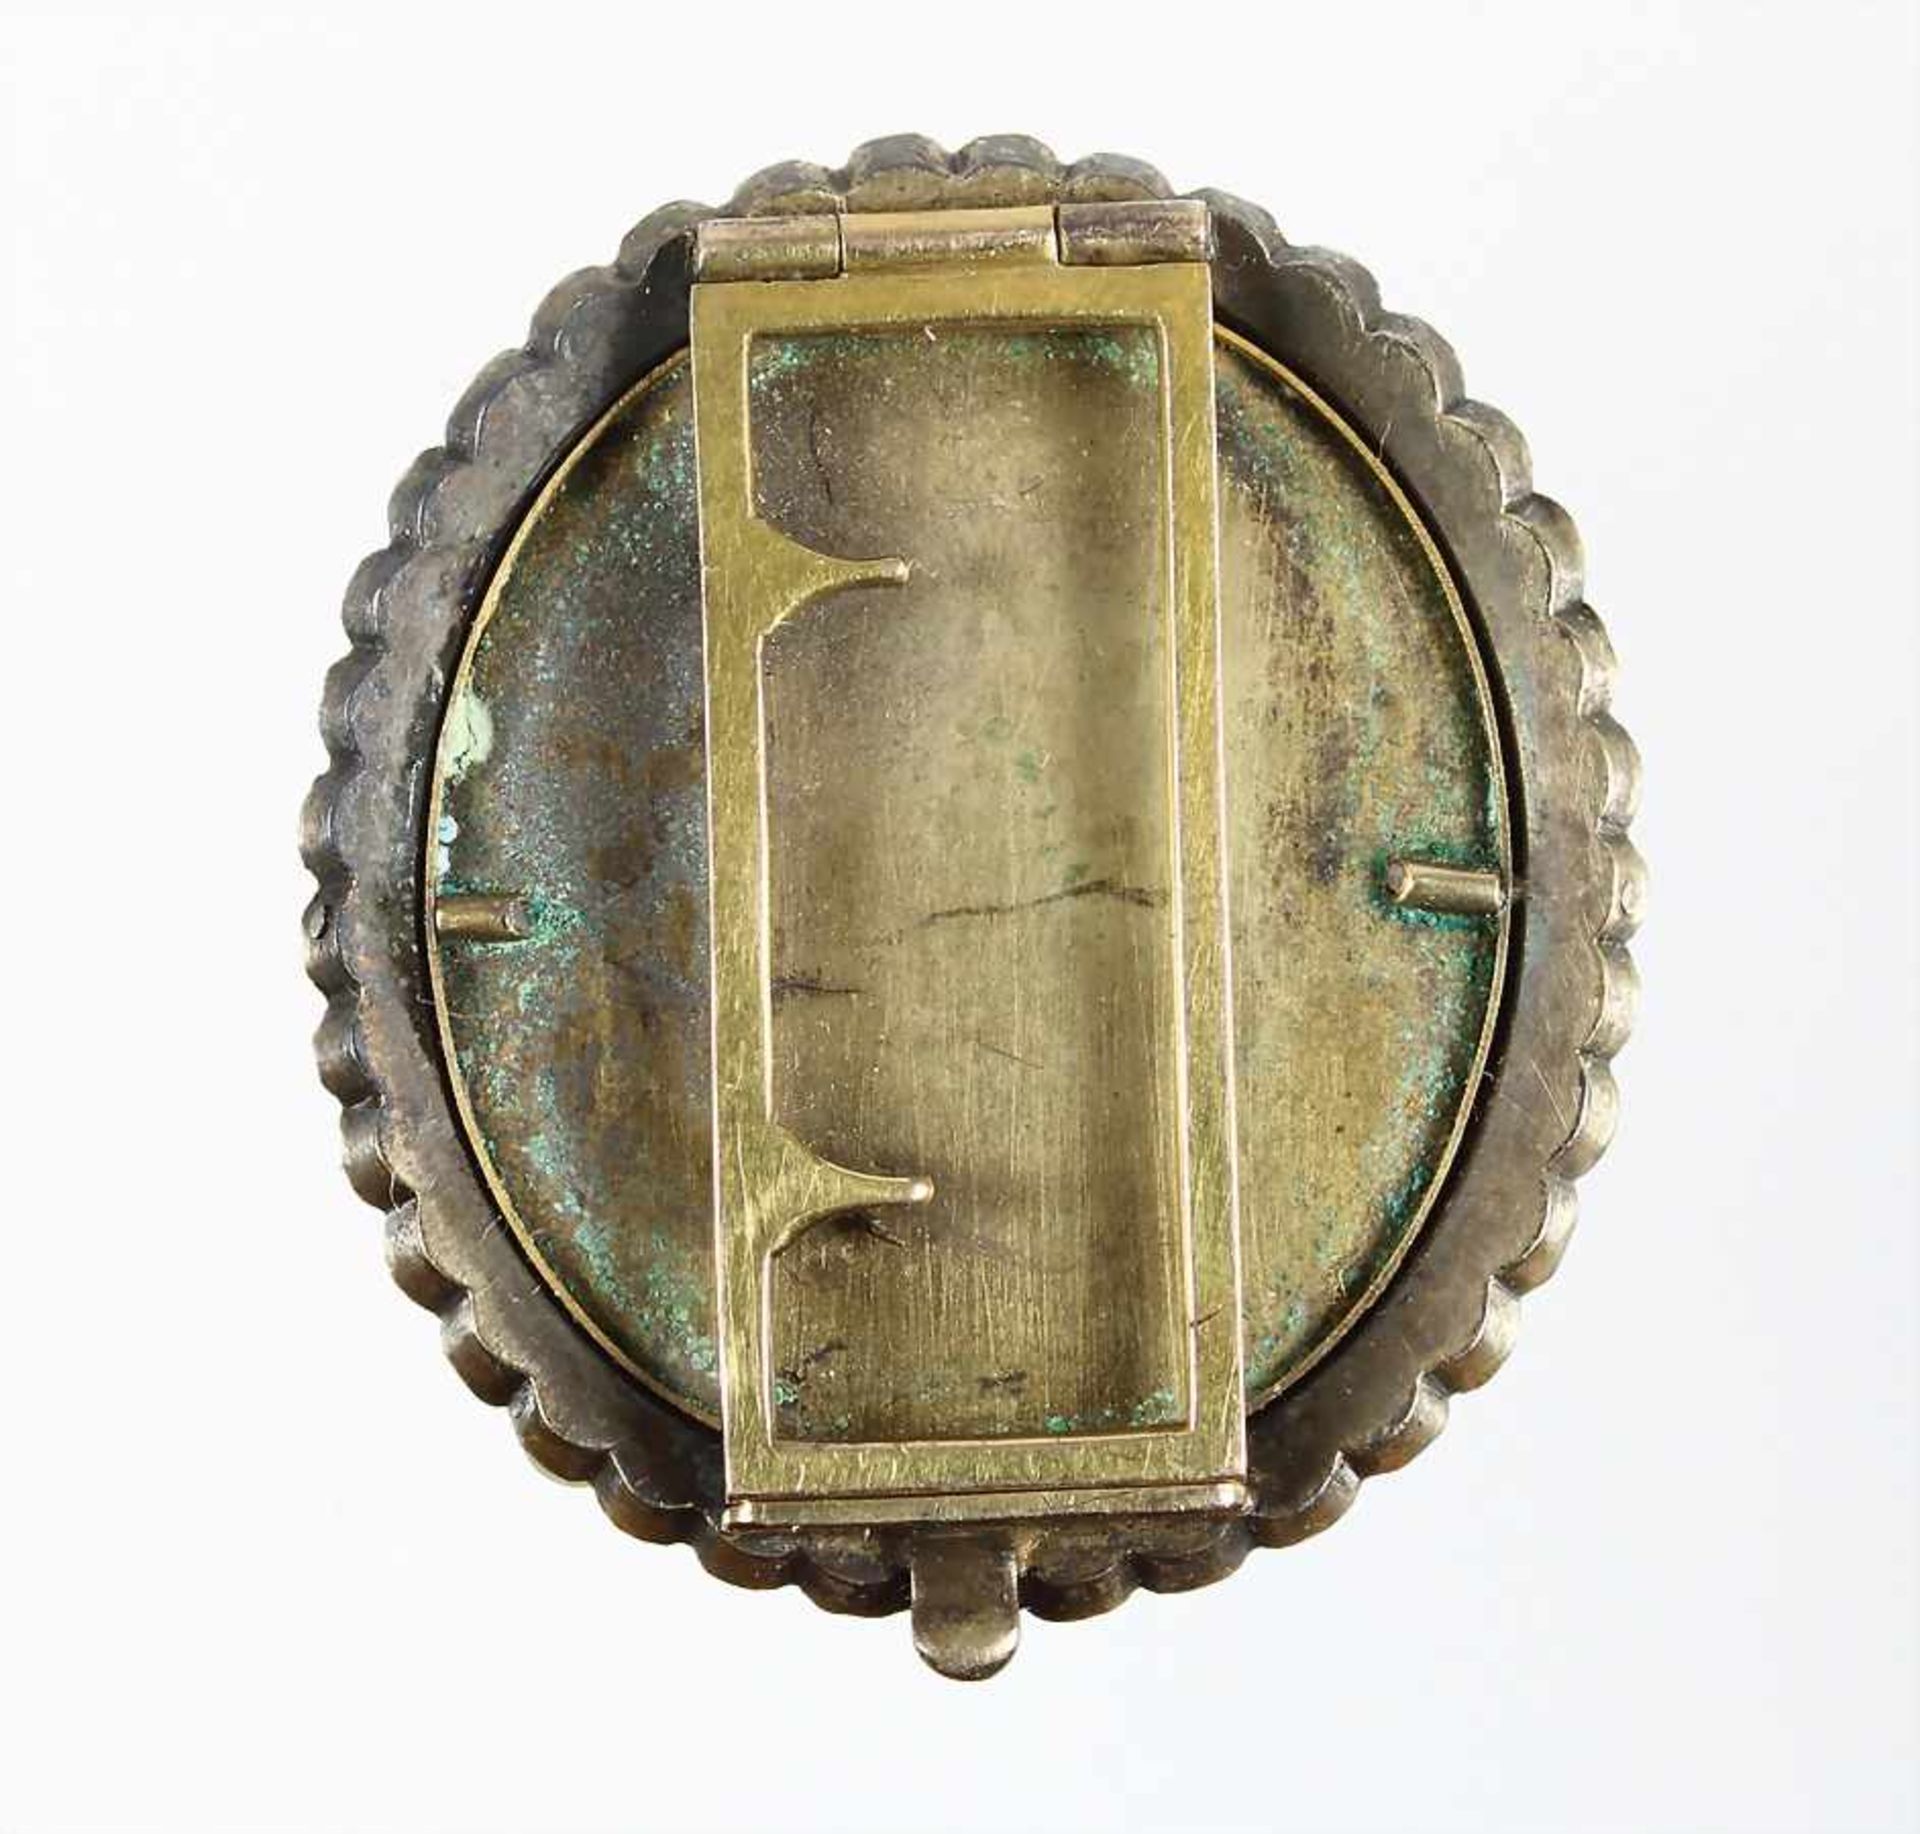 Anhänger um 1840/50 (für Samtband), Silber mit Resten alter Vergoldung, 37 Stck. 1/2 Perlen umrahmen - Bild 2 aus 2